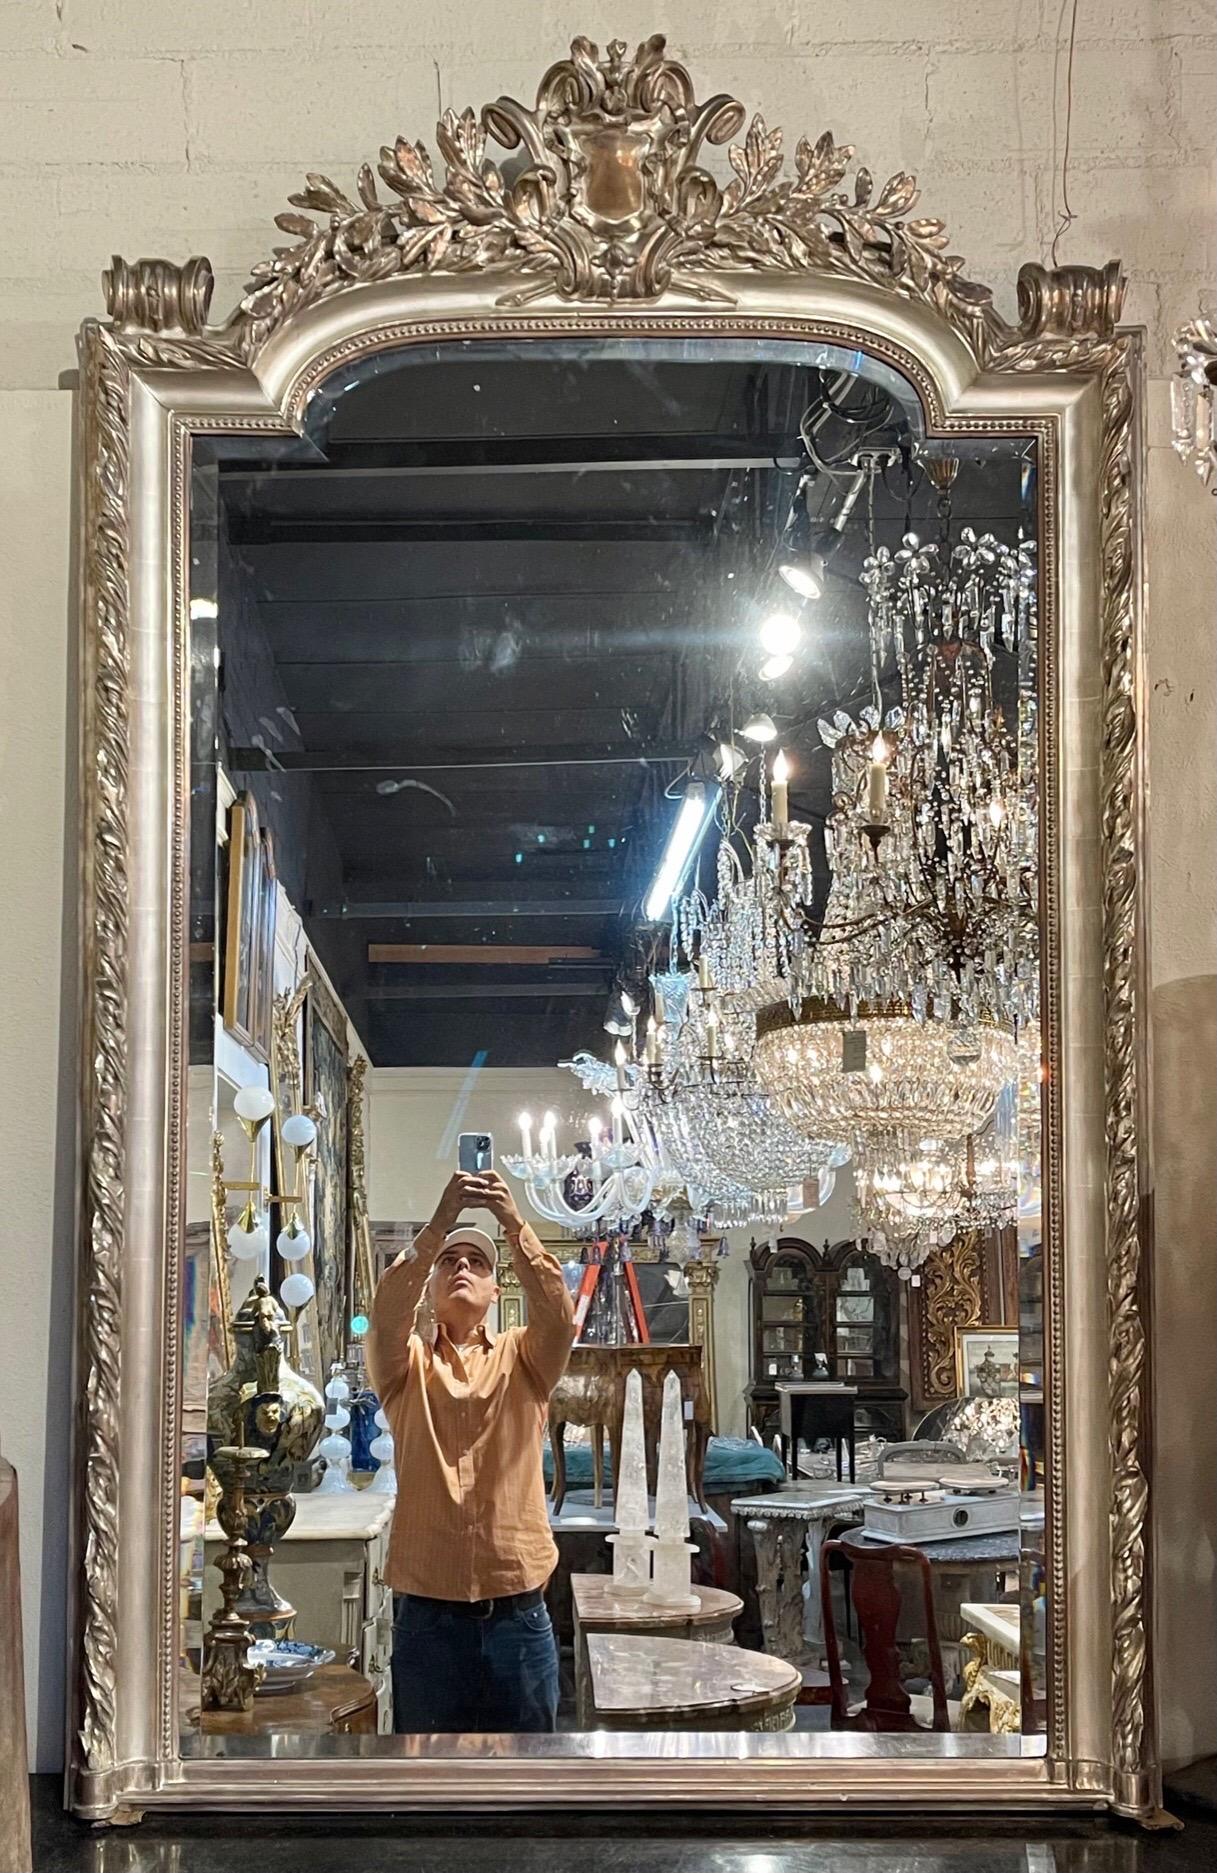 Étonnant miroir de style Louis XVI à grande échelle, sculpté et argenté, avec verre biseauté. Le miroir est doté d'une crête sculptée en haut du miroir et d'une fabuleuse finition. Spectaculaire !